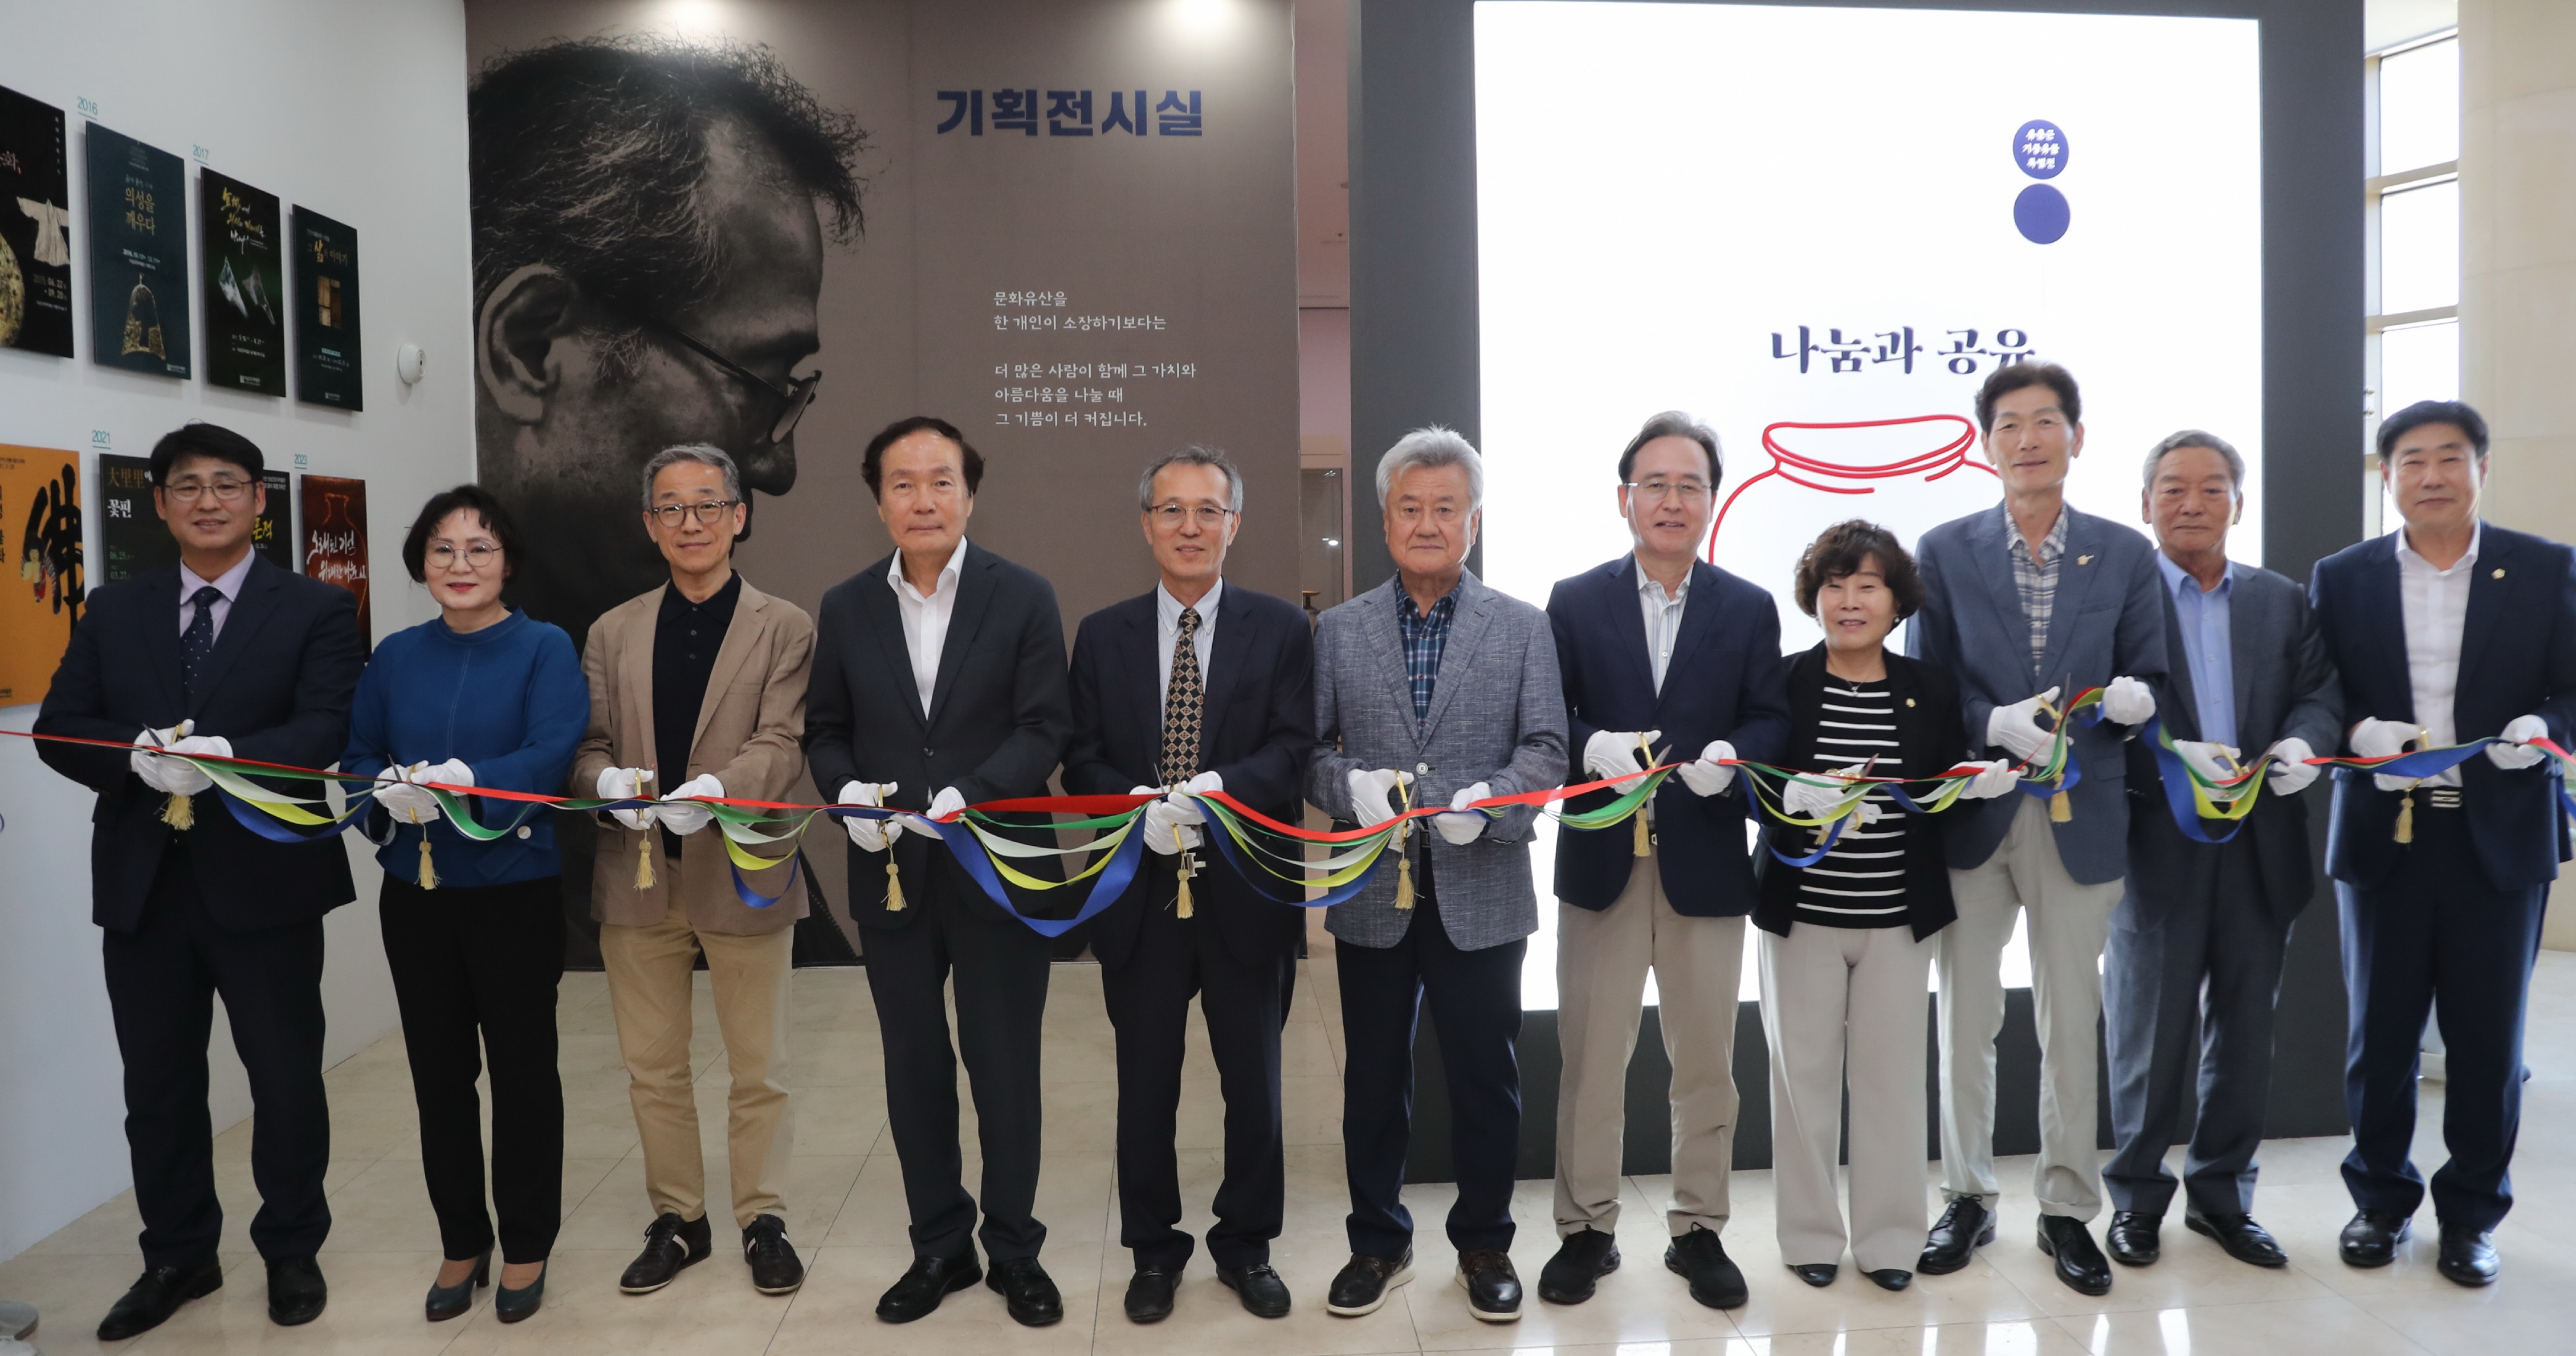 의성 조문국박물관, 유춘근 기증유물 특별전 개최 